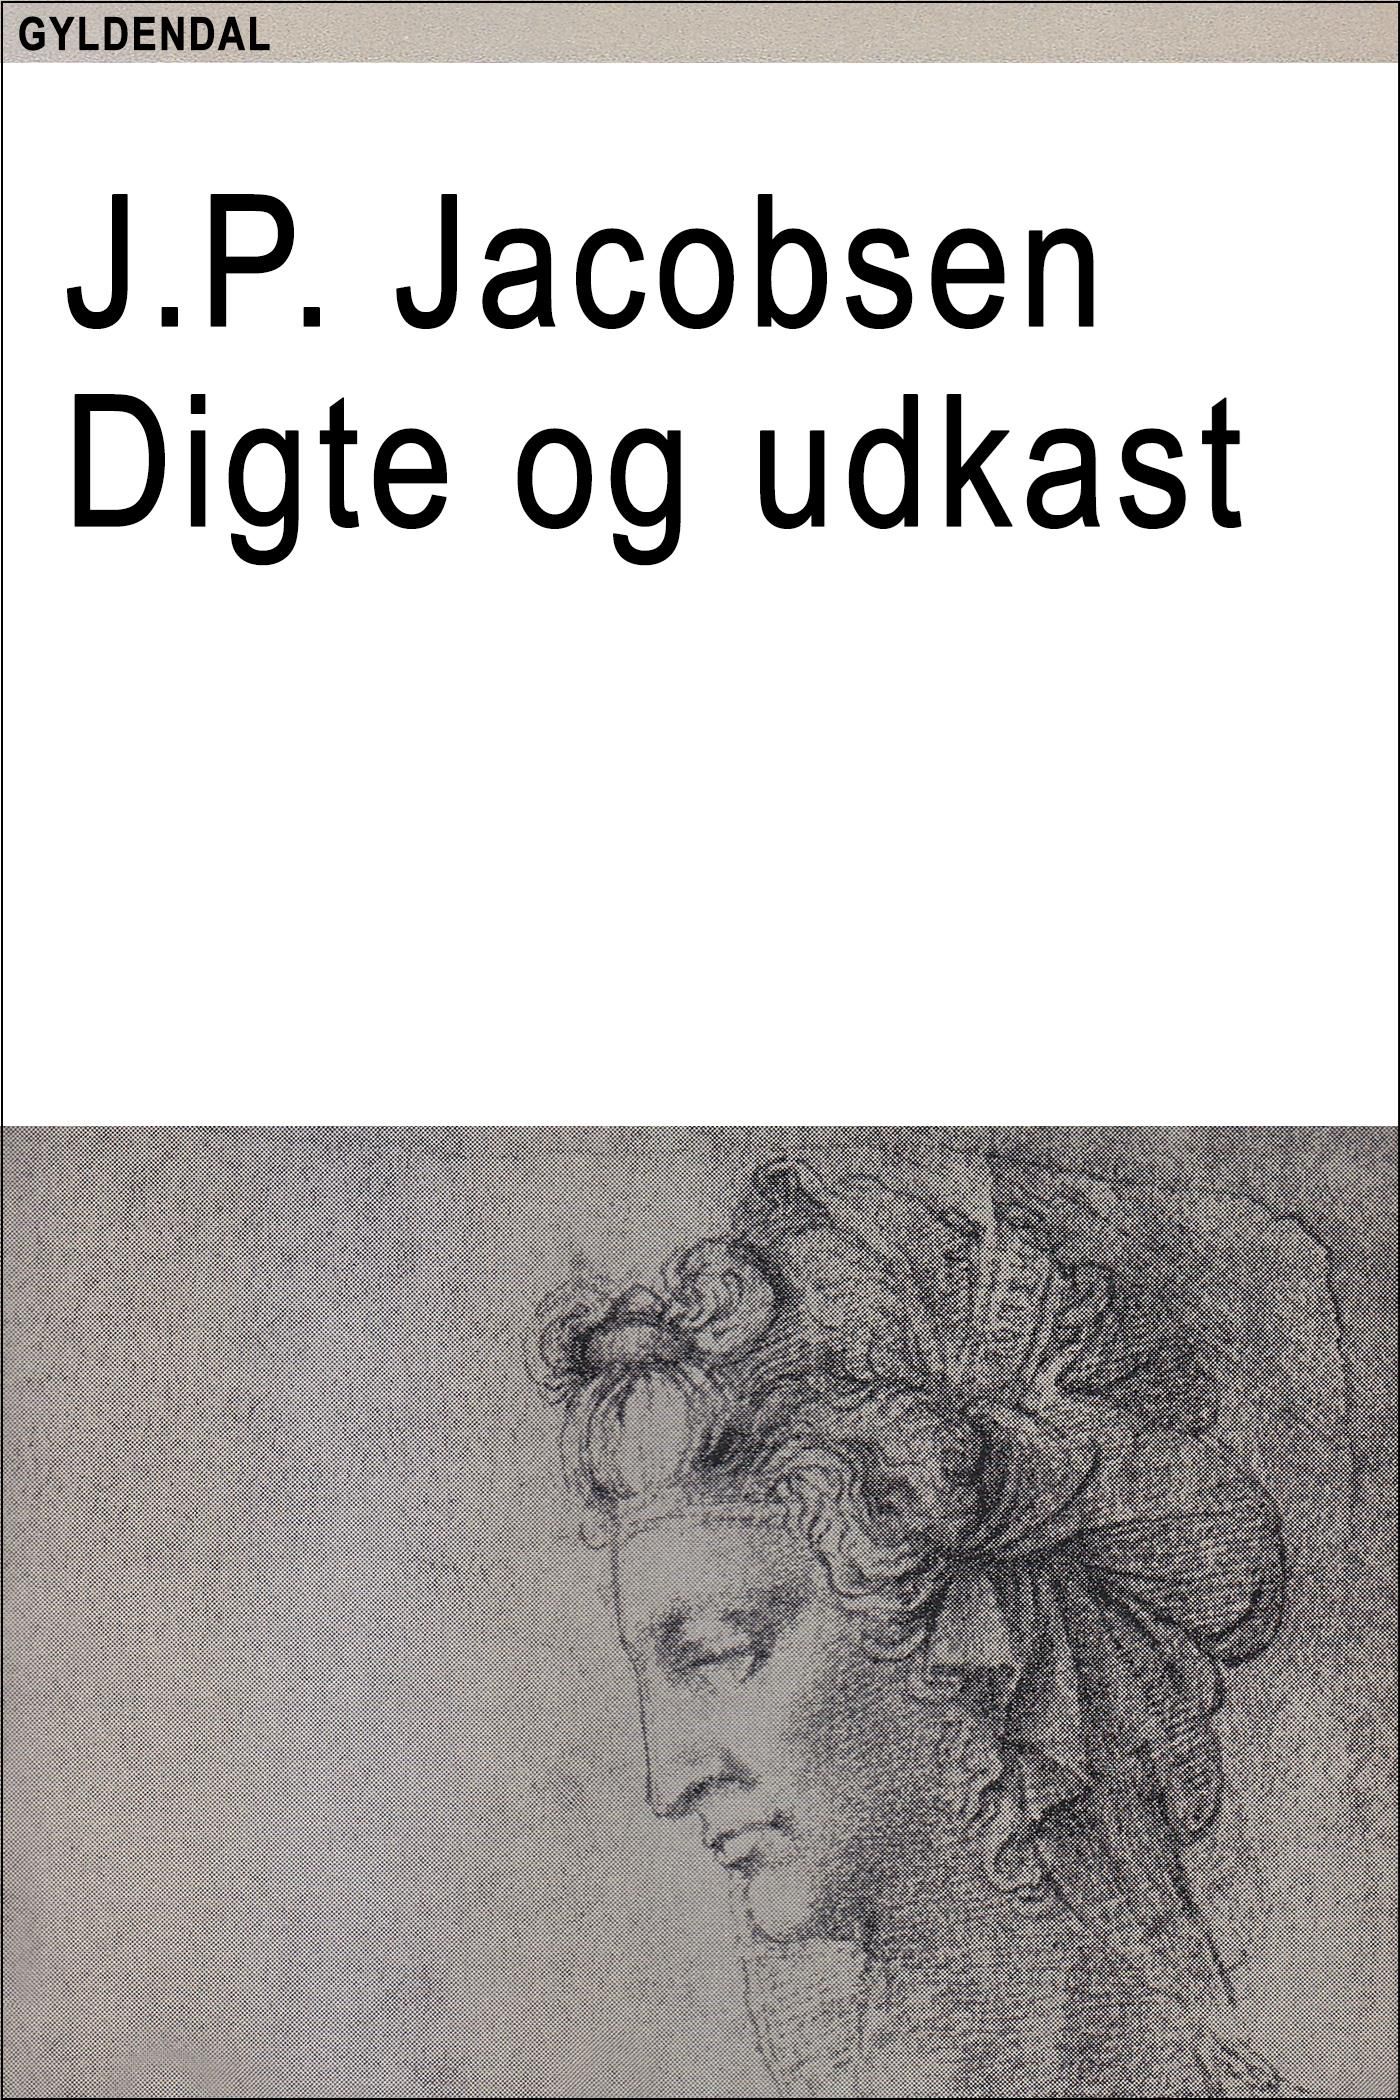 Digte og udkast, eBook by J.P. Jacobsen